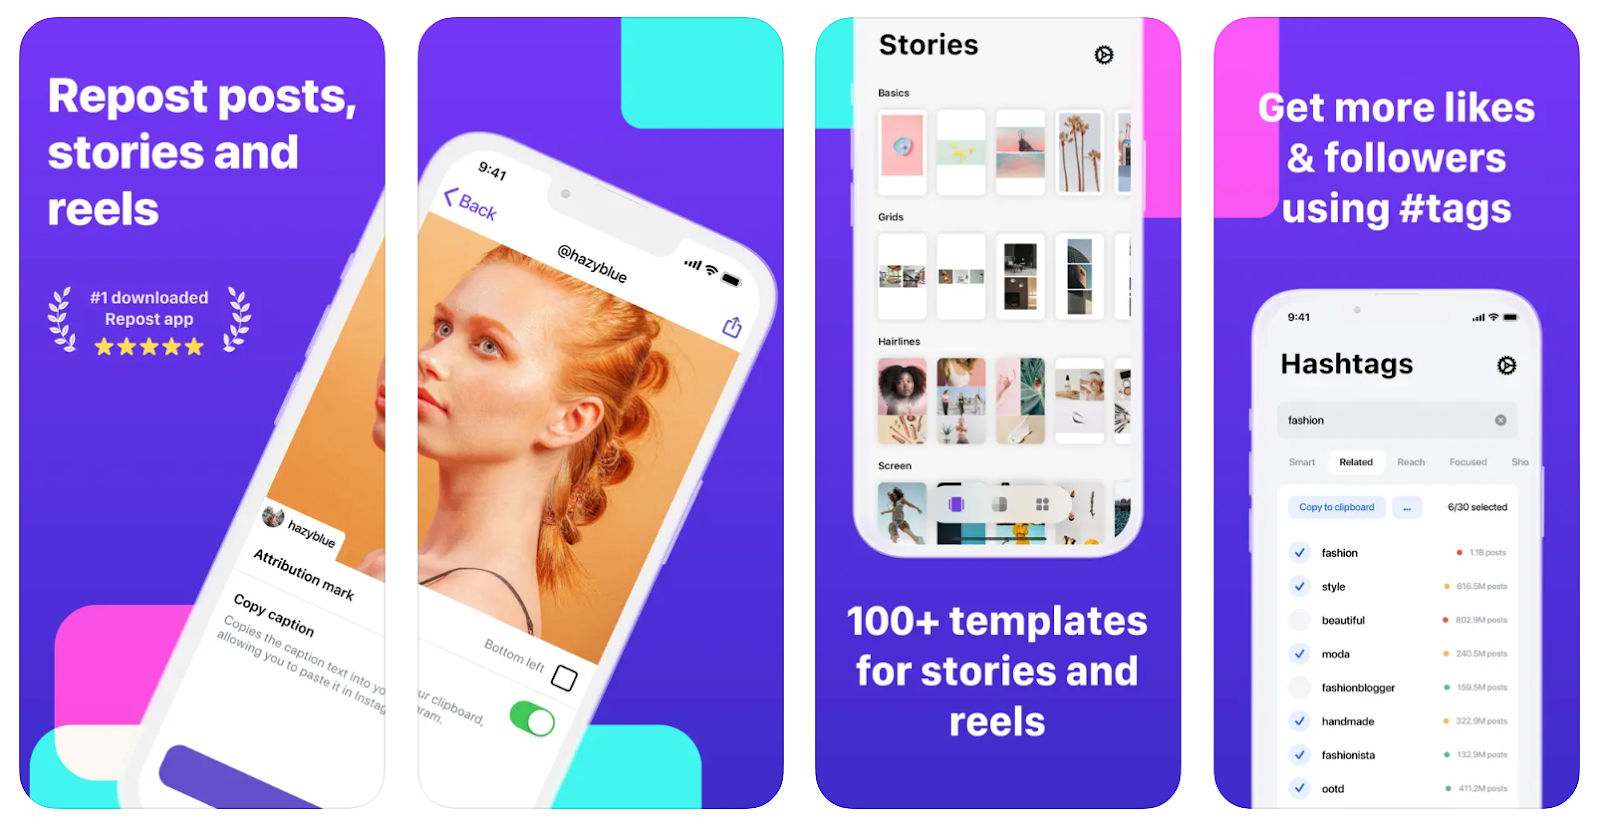 migliori app per ripubblicare su instagram: ripubblica post storie e bobine